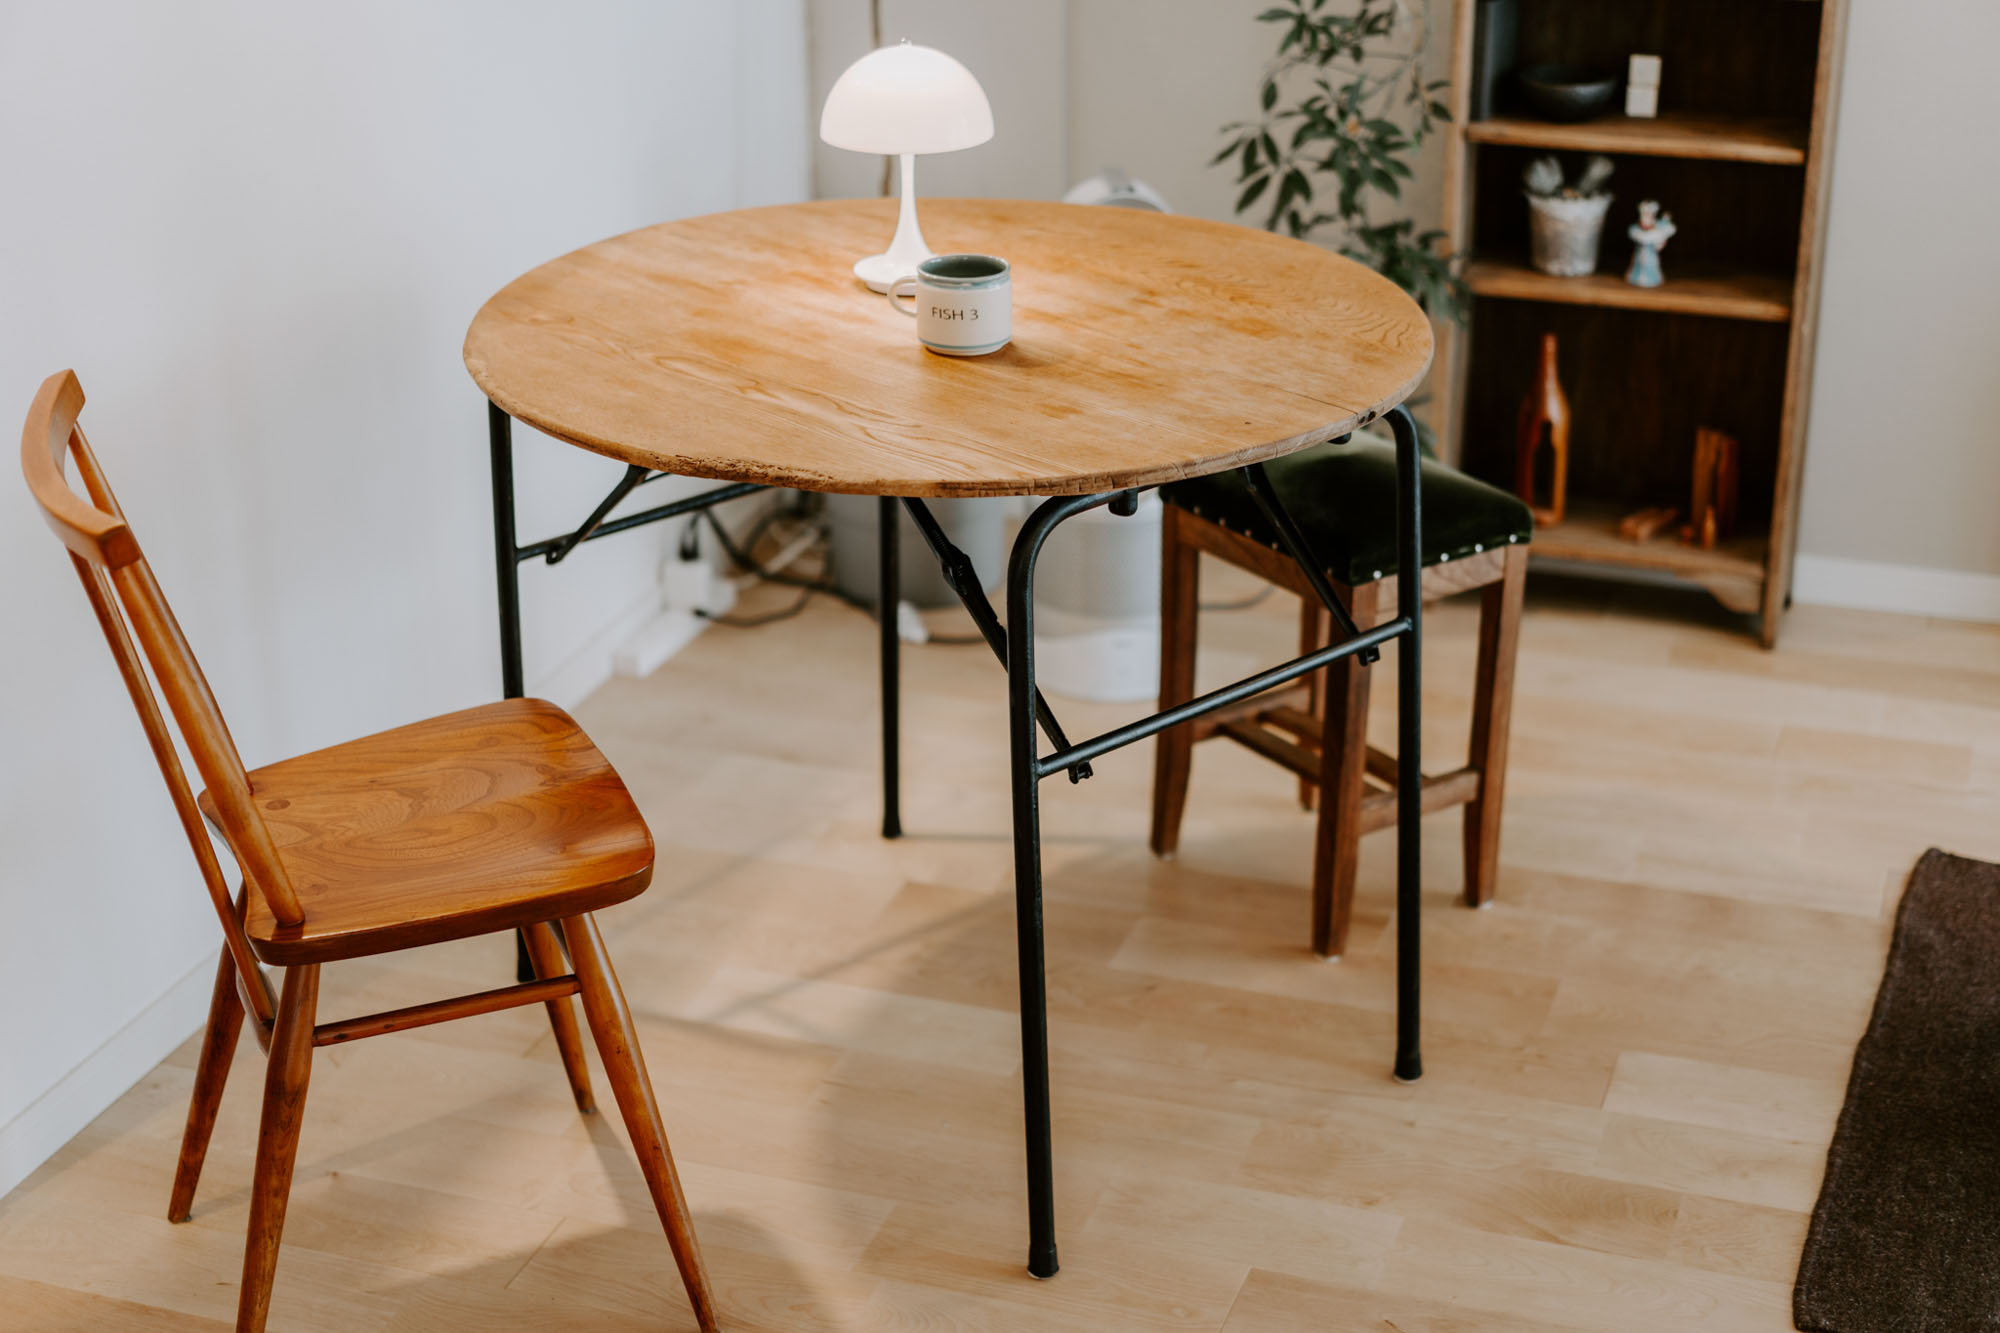 折りたたみもできるというダイニングテーブルは、栃木の「scales apartment」で購入。